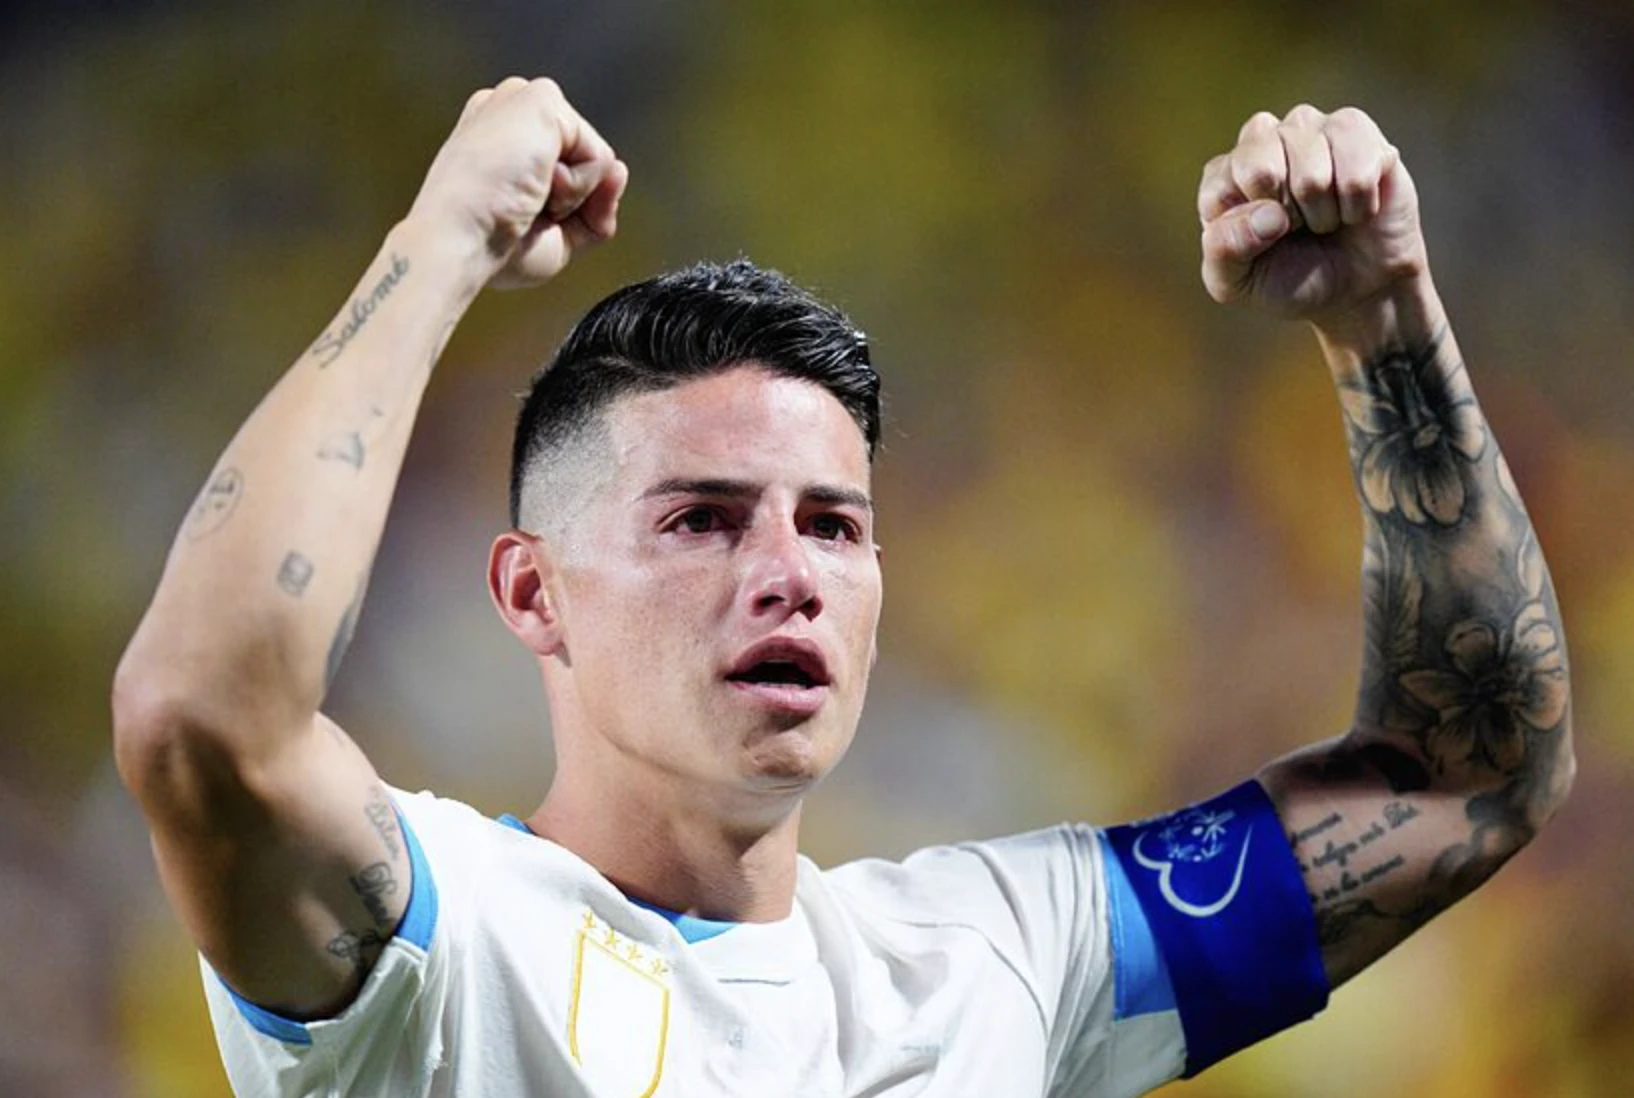 Đưa Colombia vào chung kết Copa America, James Rodriguez bật khóc: ‘Tôi đã chờ 13 năm’